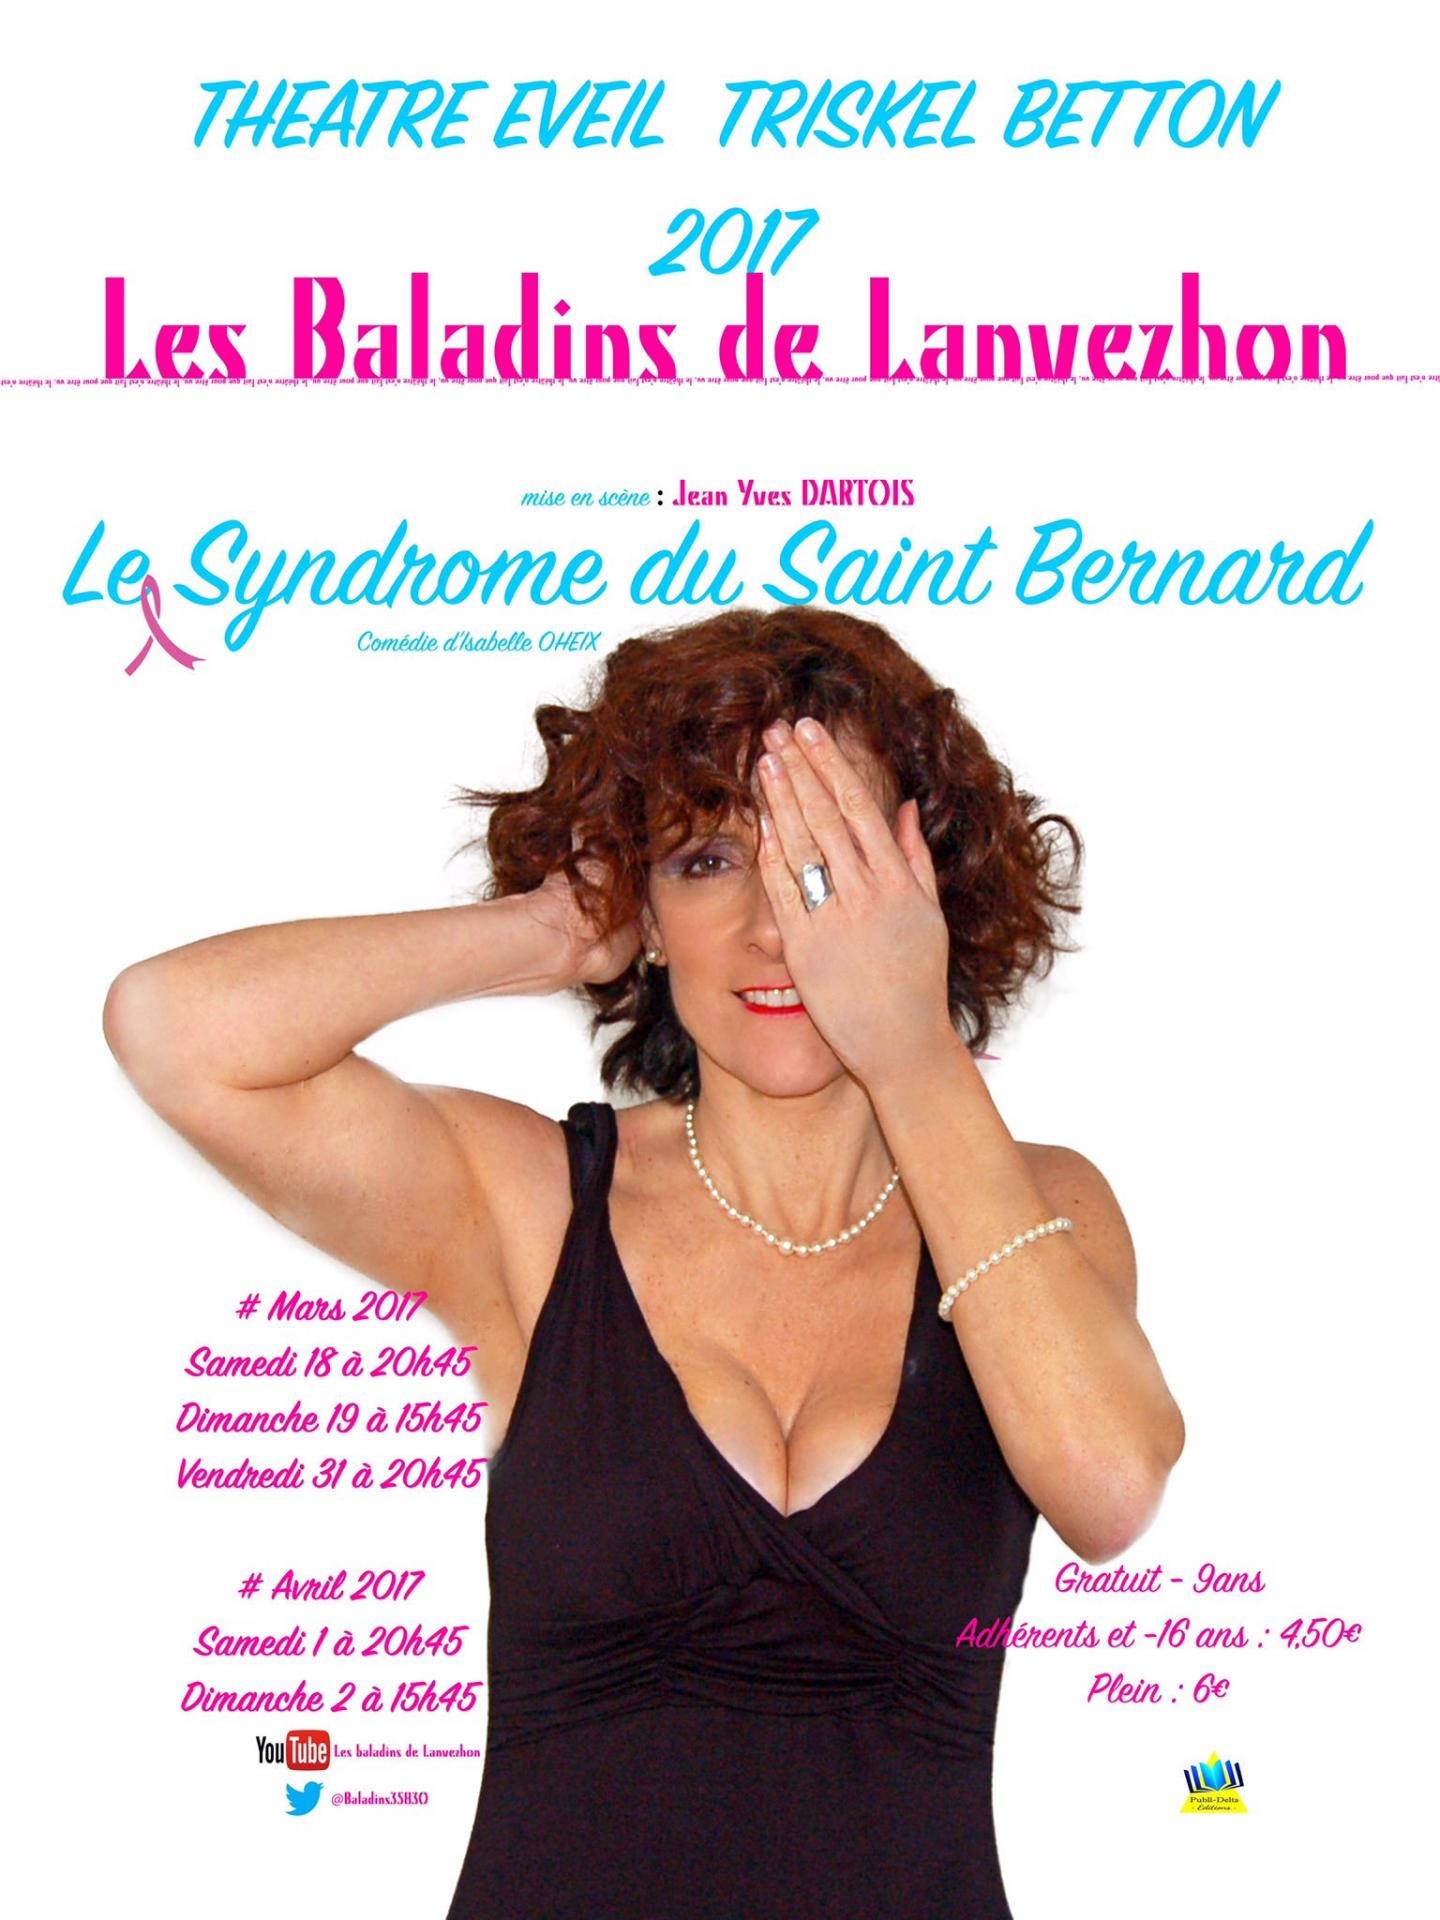 Le Syndrome du St Bernard 2017  les baladins de lanvezhon théâtre Betton